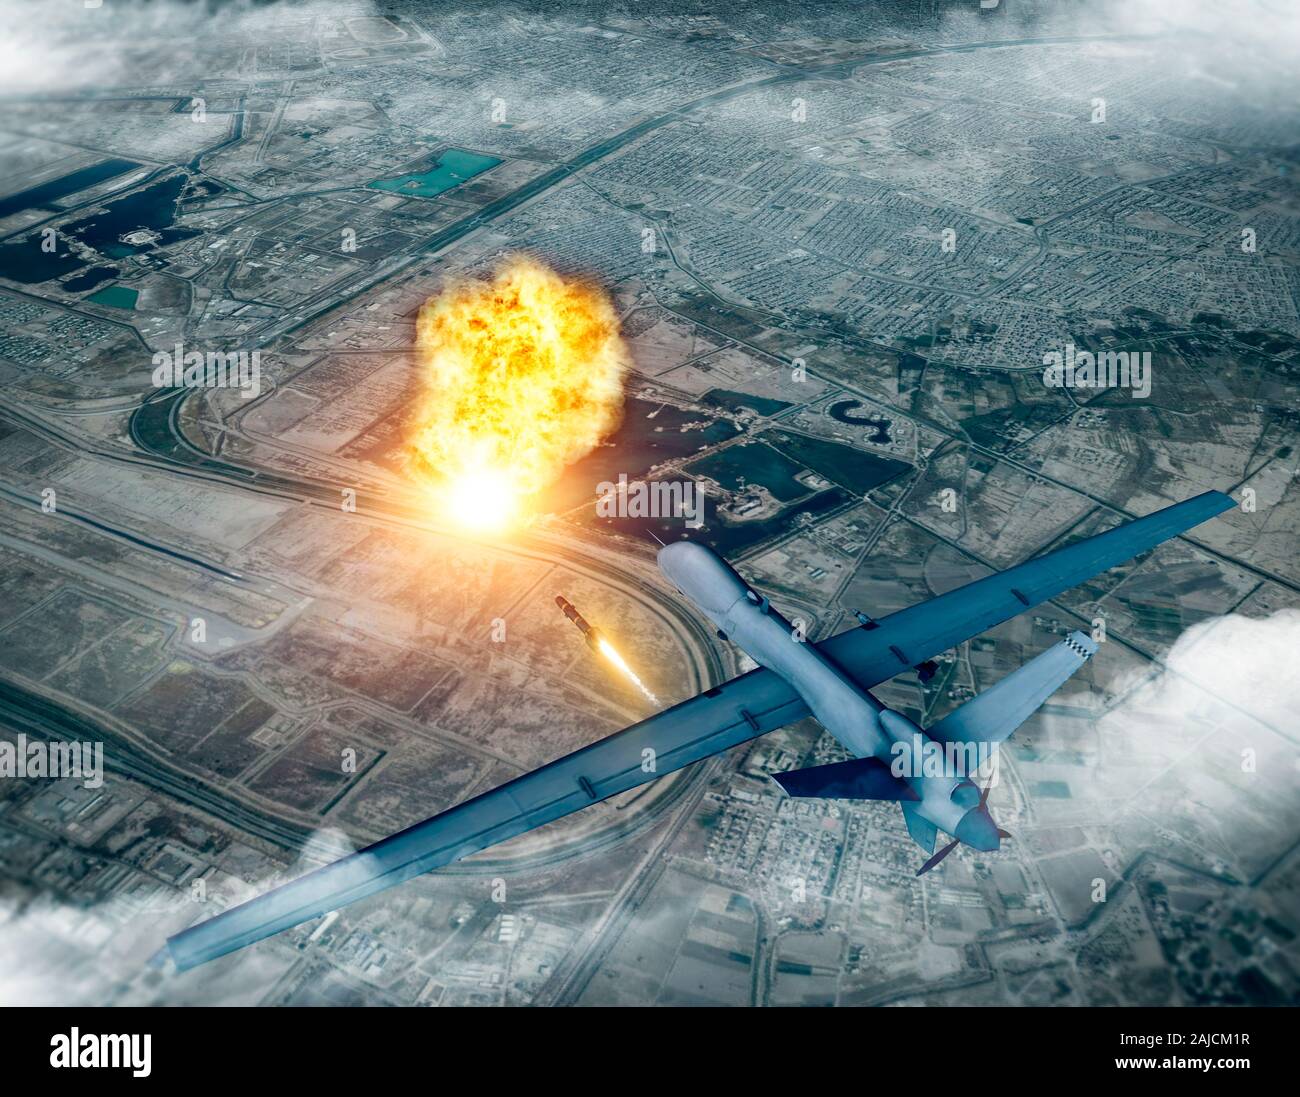 Noi drone attacco contro il convoglio del generale iraniano Soleimani Qassem, 3d rendering. Aeroporto di Baghdad, Iraq Foto Stock